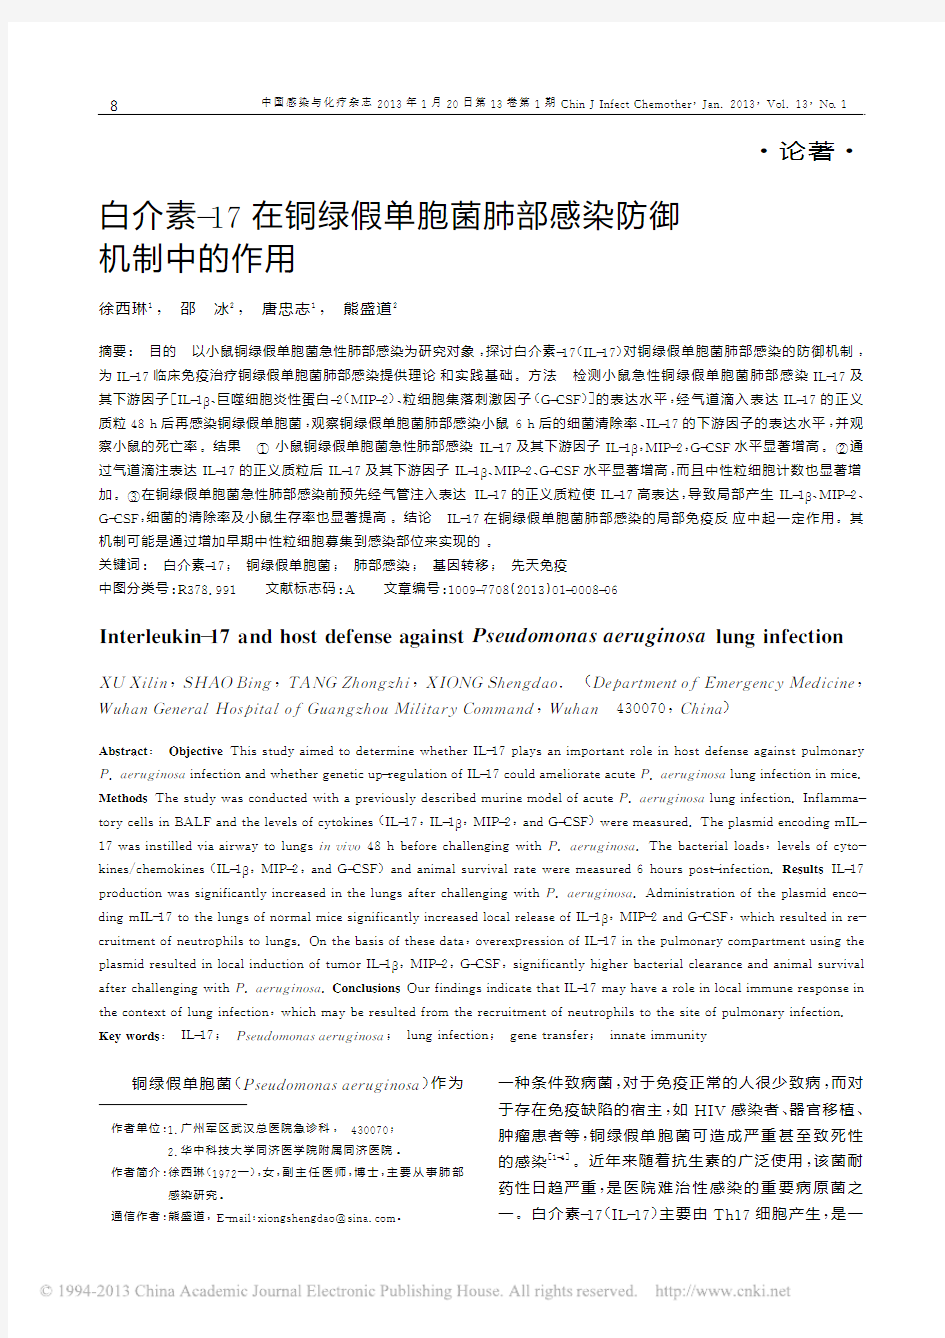 白介素_17在铜绿假单胞菌肺部感染防御机制中的作用_徐西琳pdf